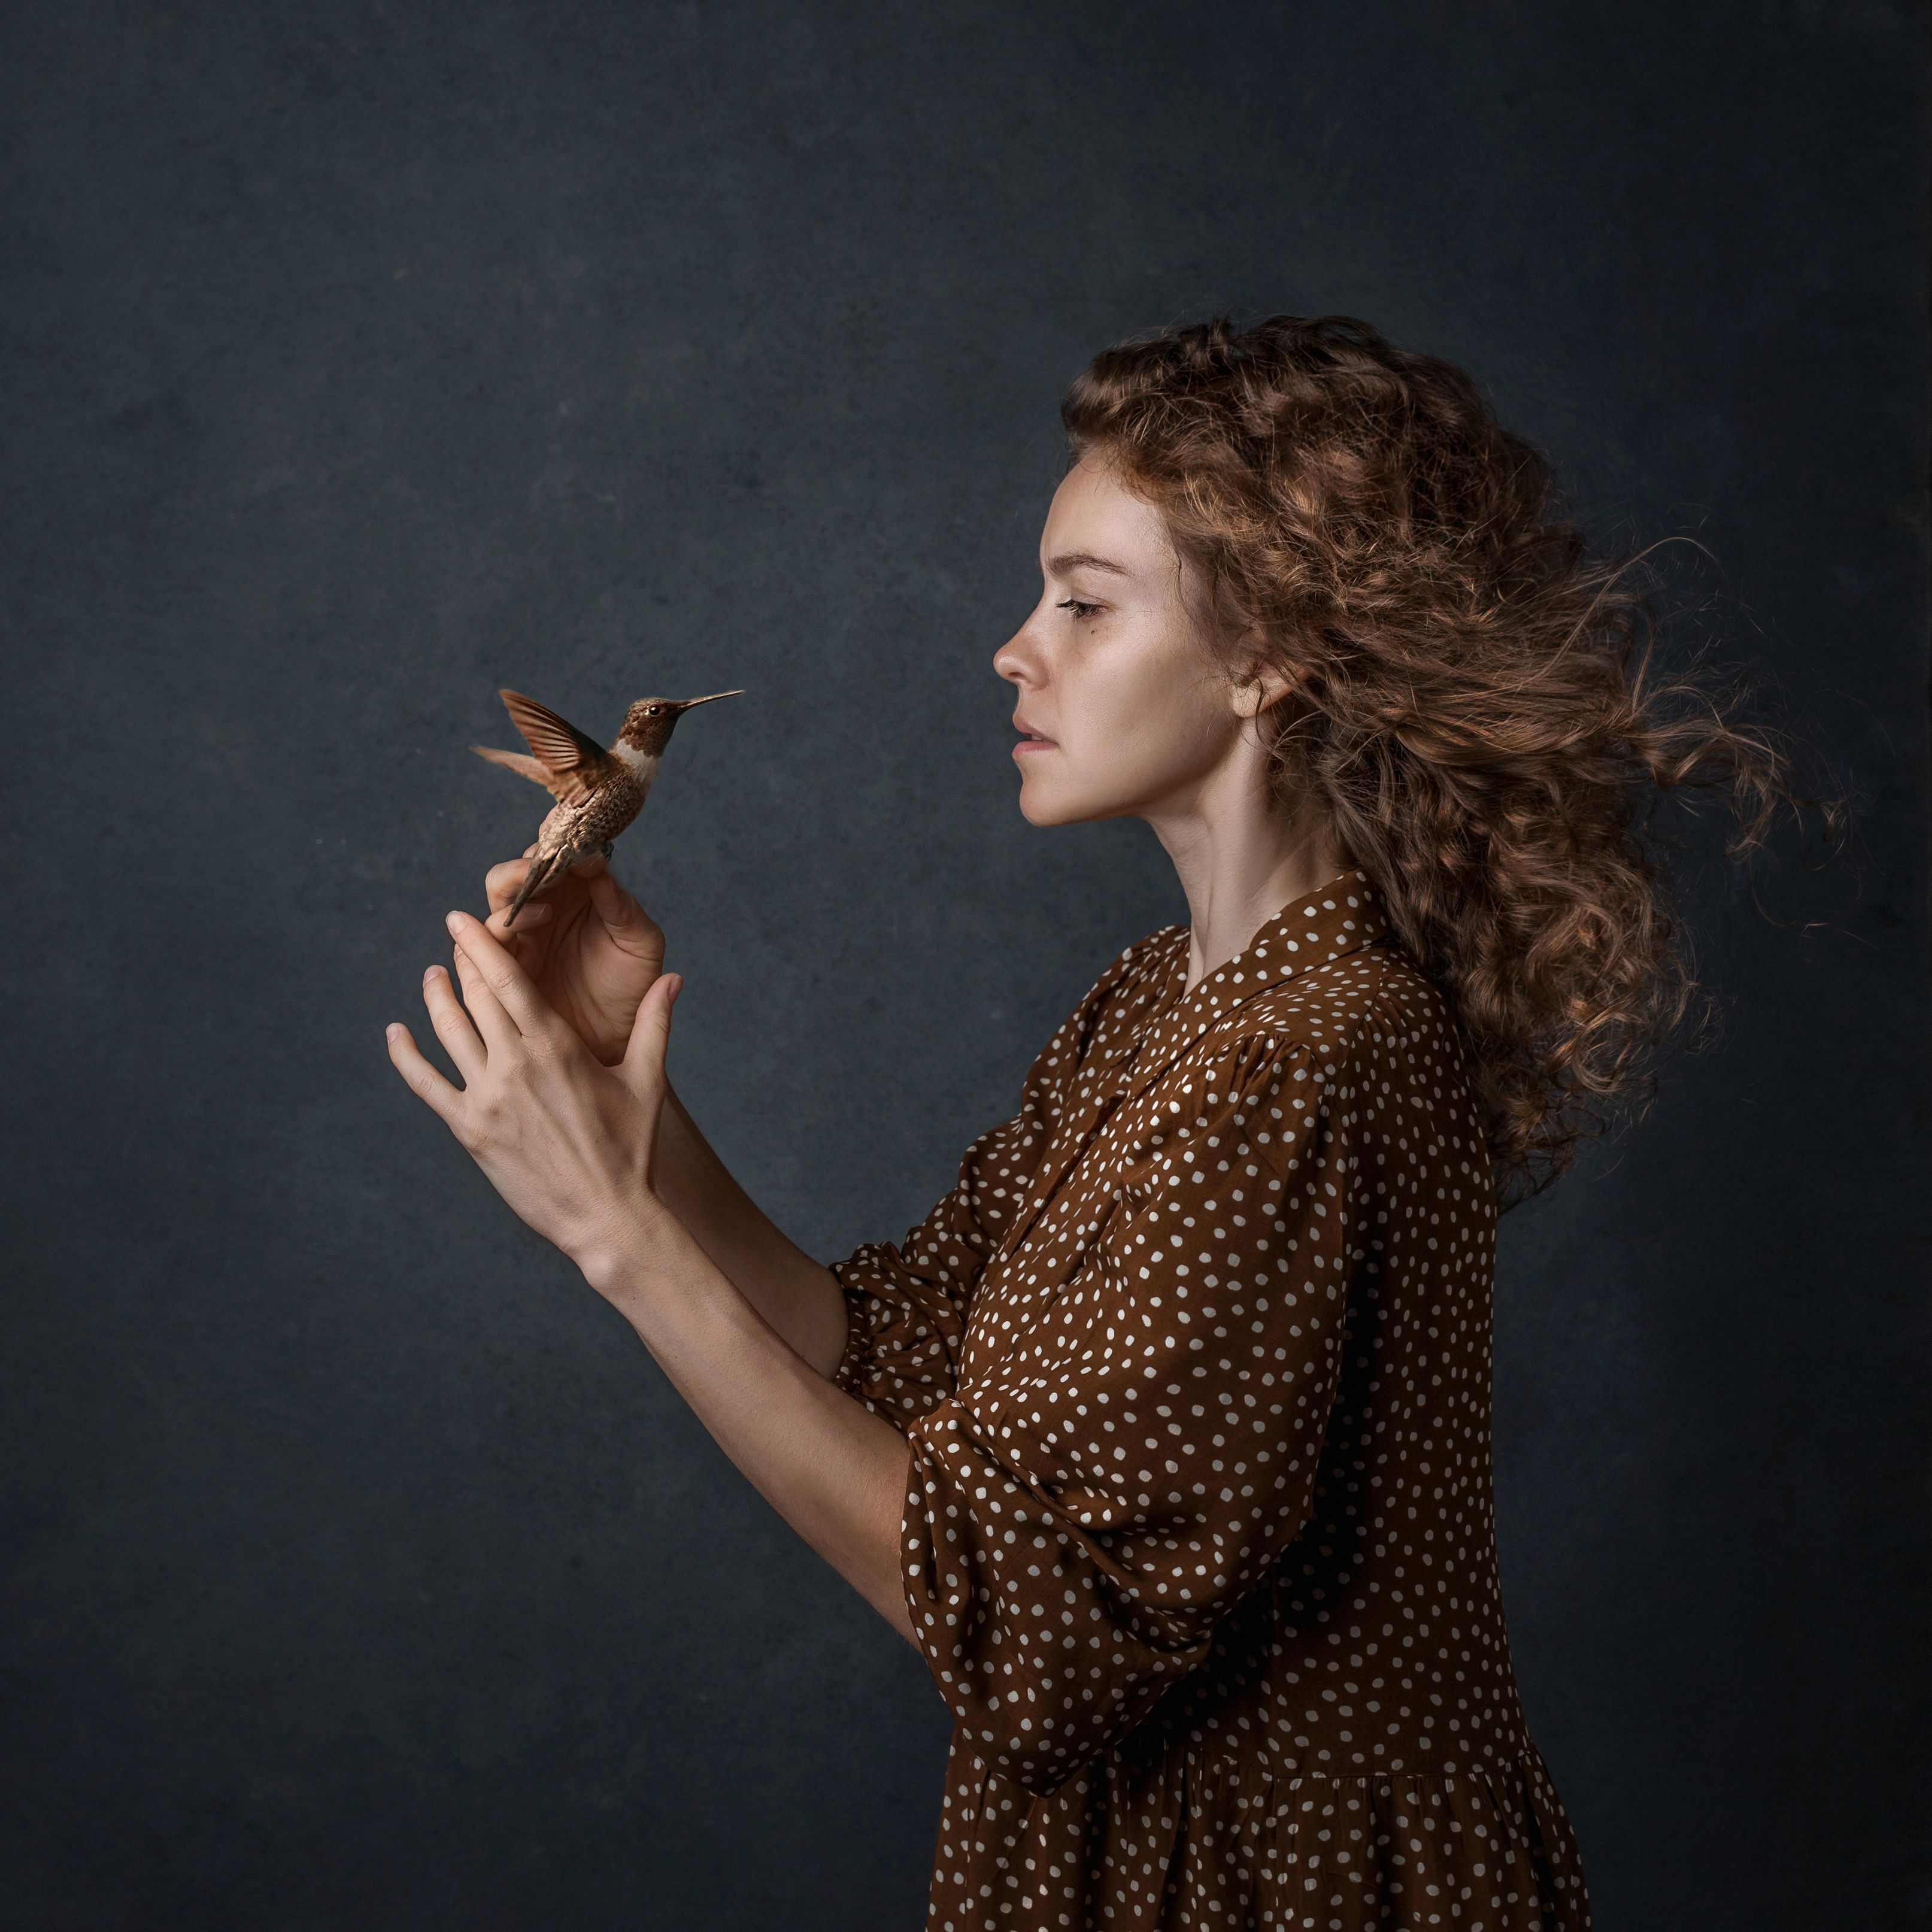 портрет женскийпортрет птица canon 50mm, Наталья Русских